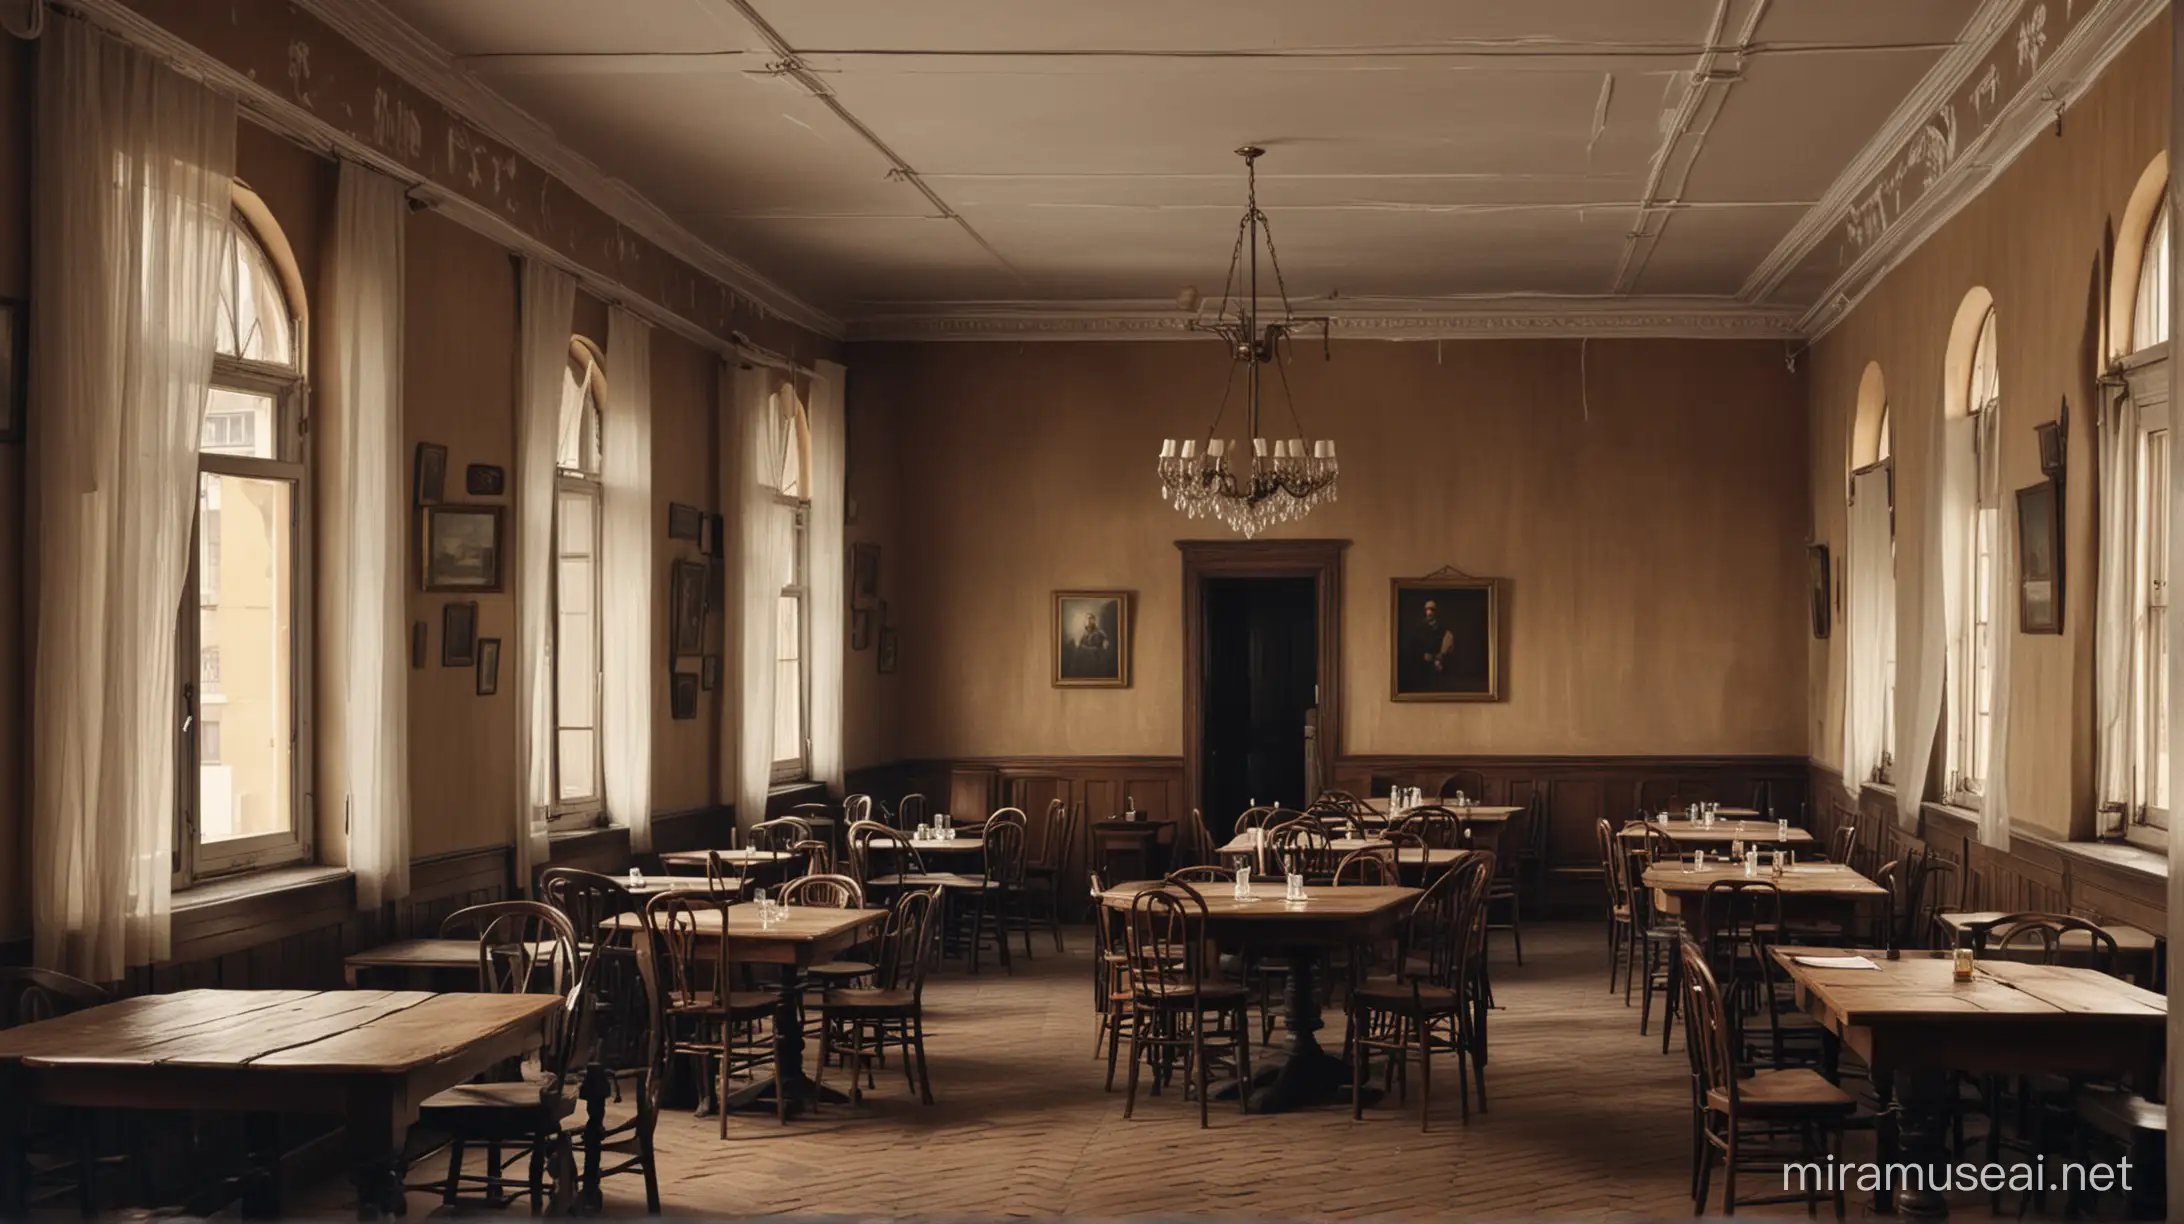 изображение внутреннего помещения трактира без людей в зале в Петербурге начала девятнадцатого века как задний фон для новеллы